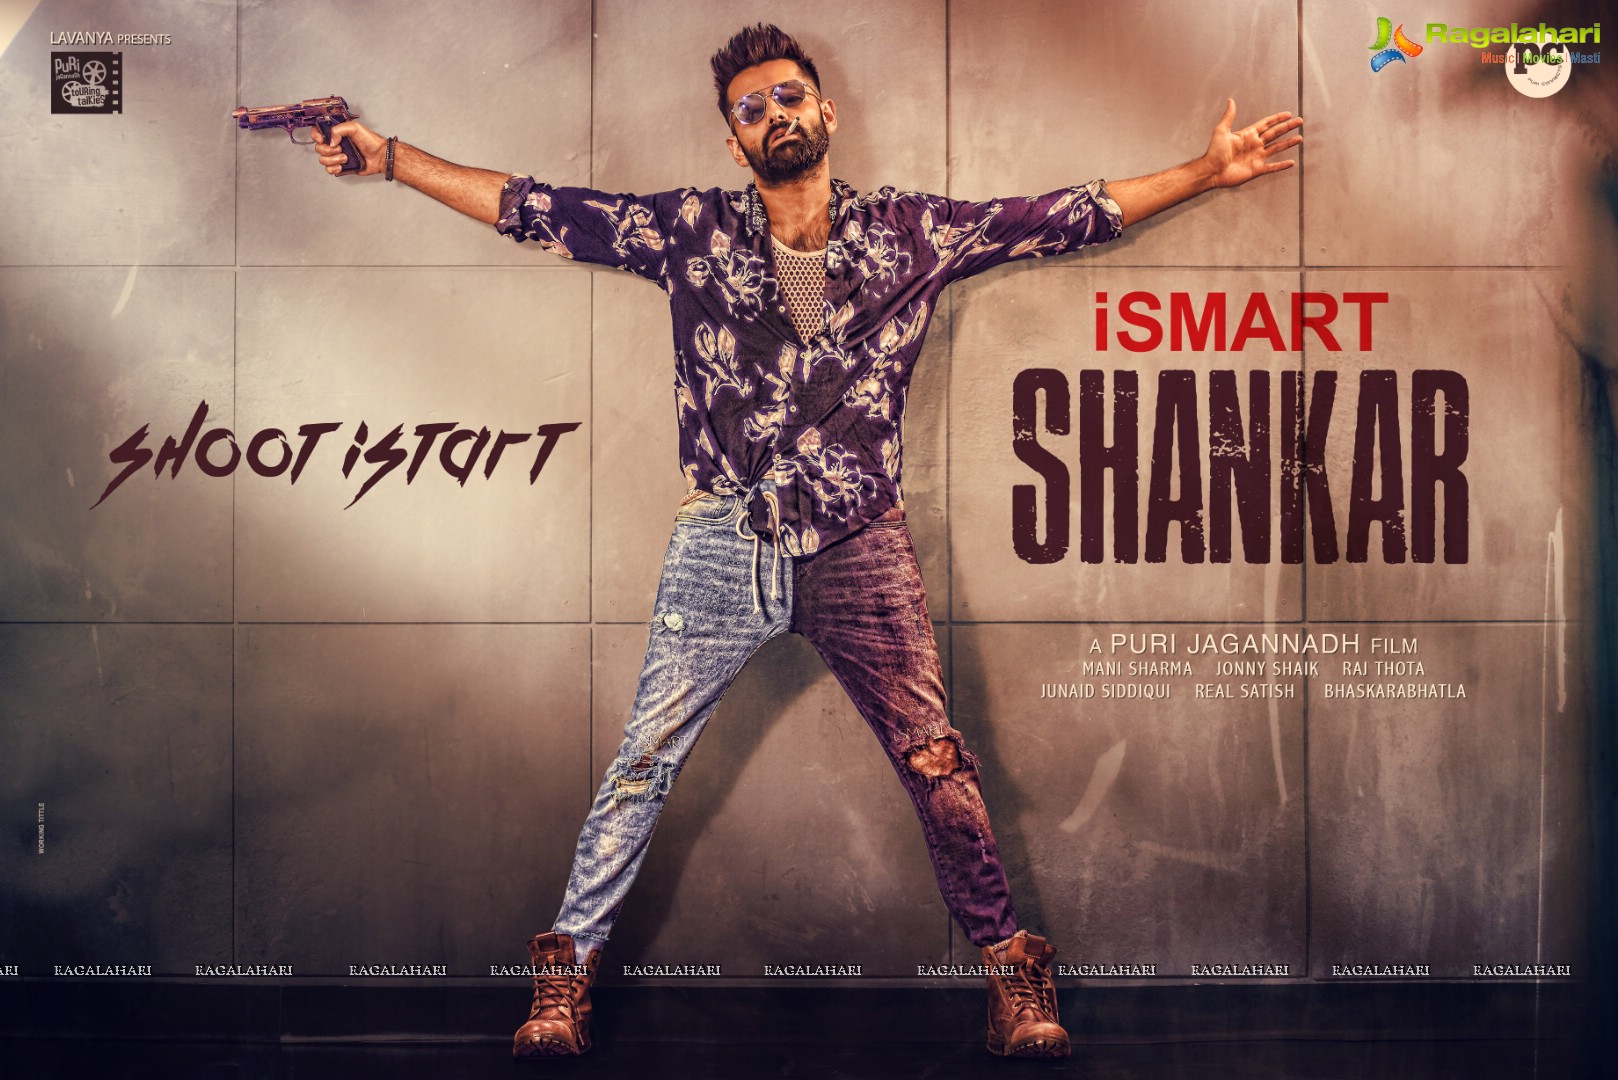 iSmart Shankar shoot starts Poster
